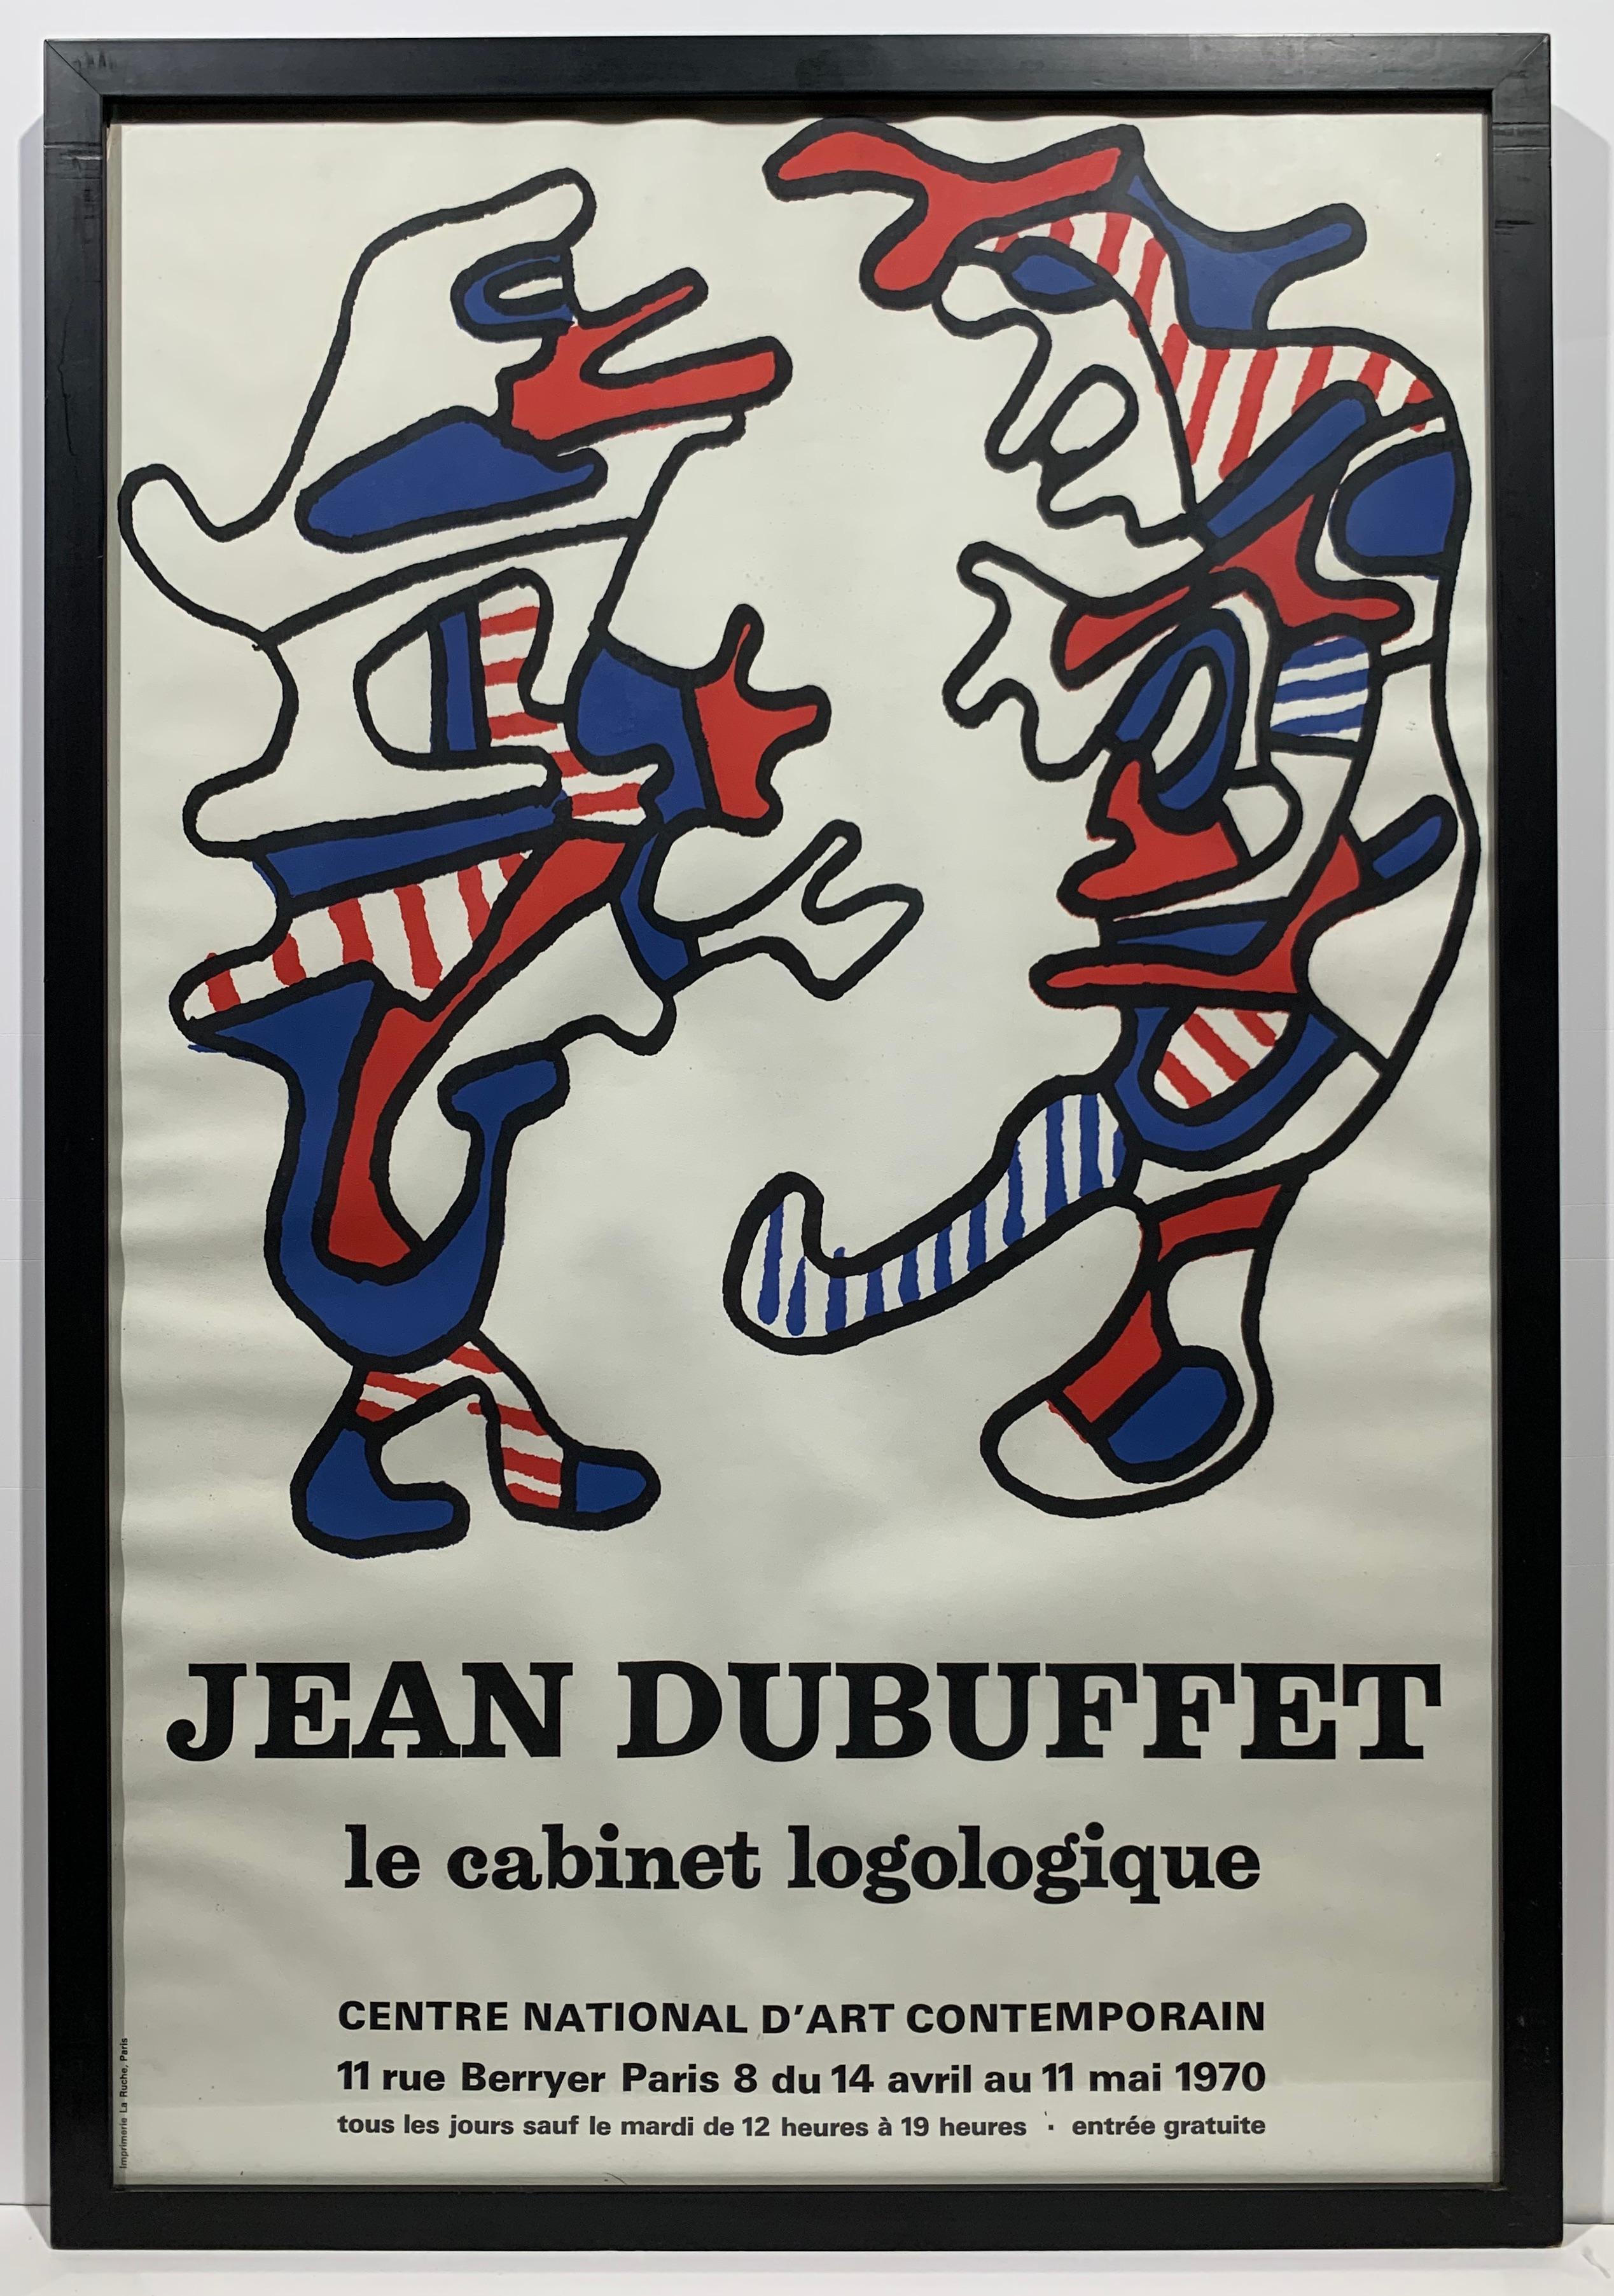 Jean DUBUFFET
Zwei Zeichen, 1970
Originales lithografisches Plakat für die Ausstellung "Das logologische Kabinett" 1970 im Centre National d'Art Contemporain
Abmessungen: 69 x 48 cm